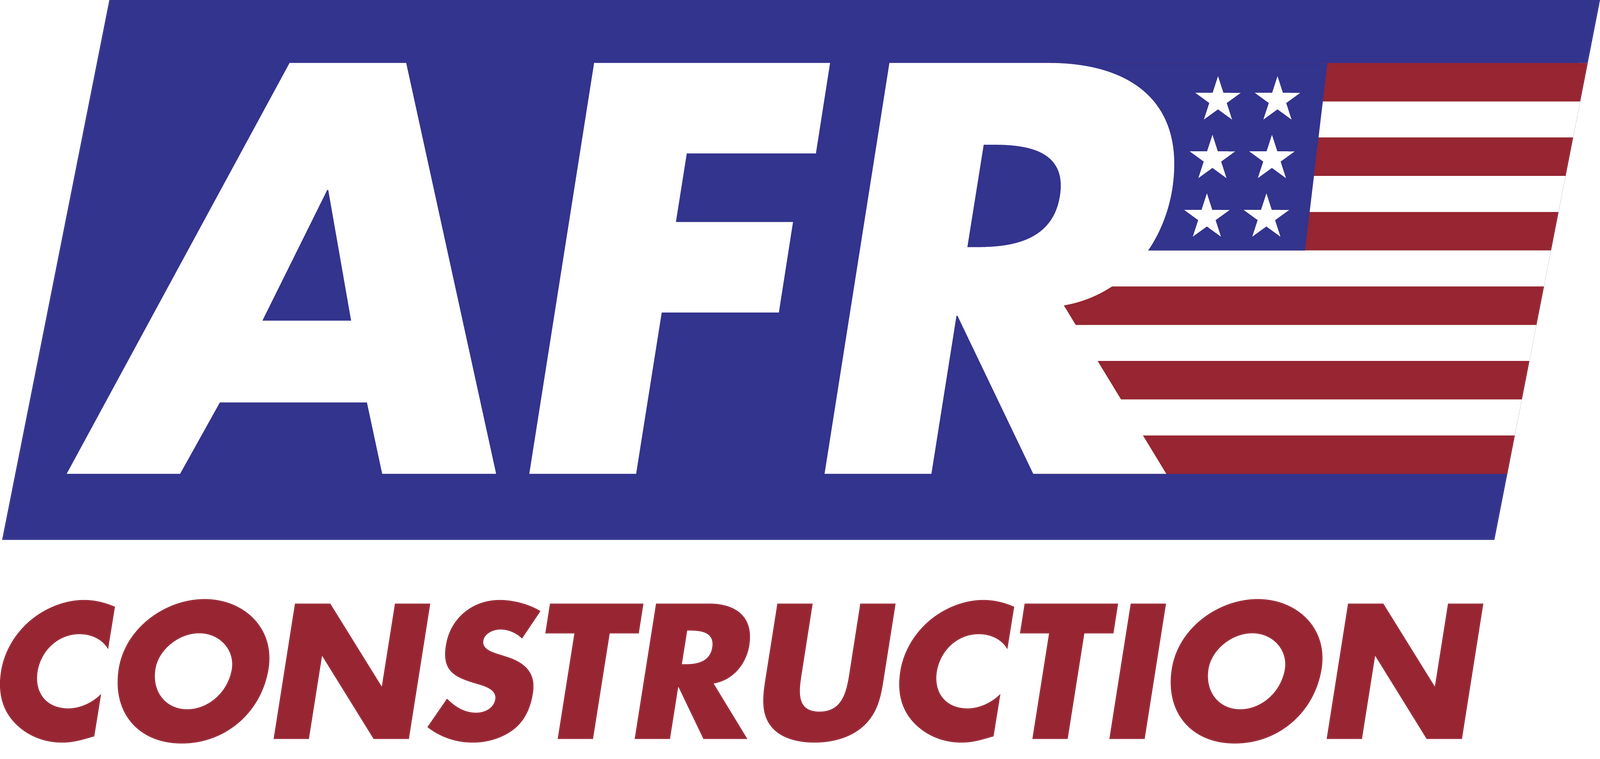 AFR logo 1 - Edited.png